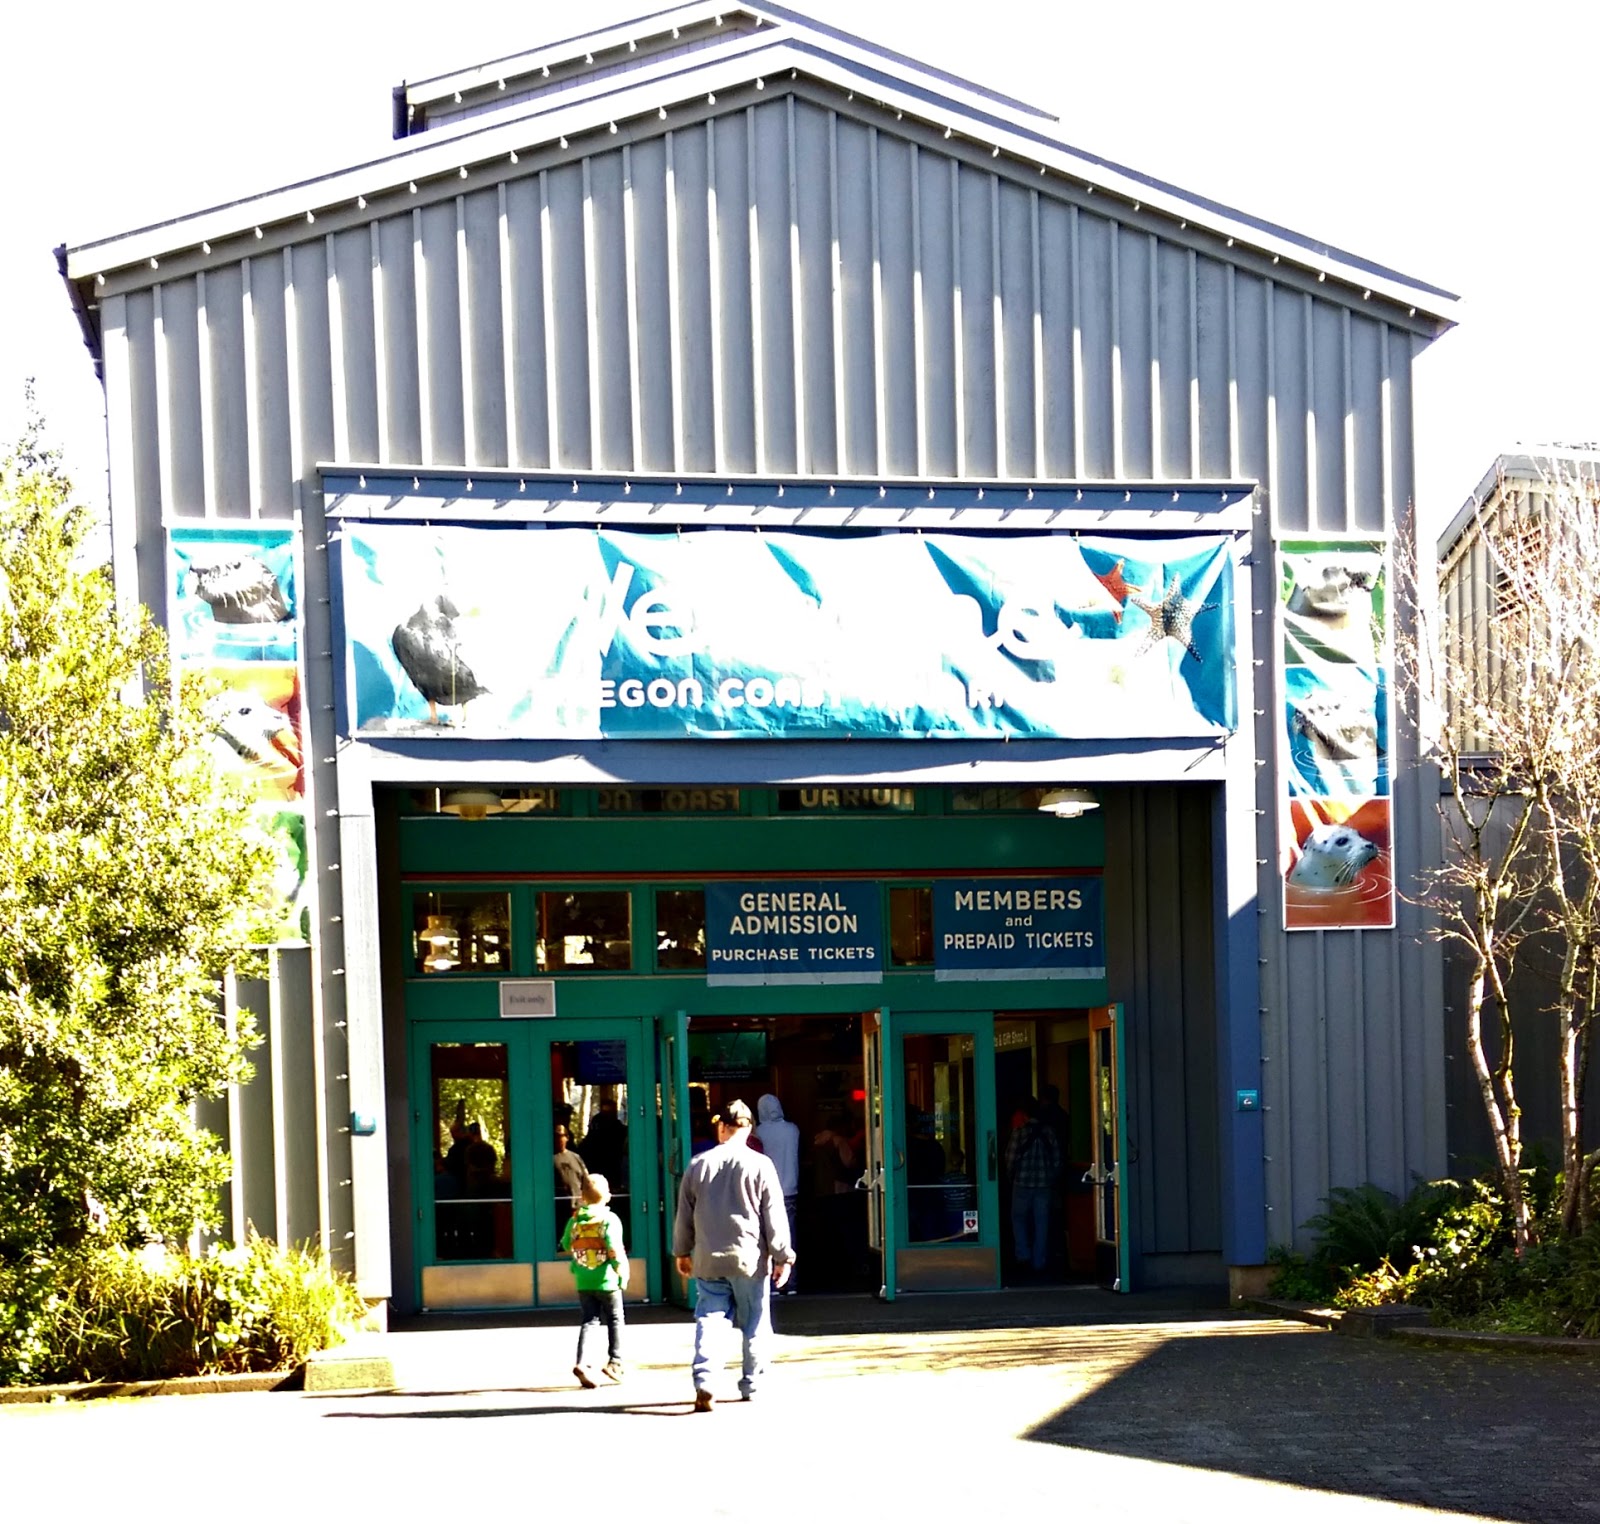 Living Locally: The Oregon Coast Aquarium - Newport Aquarium 15